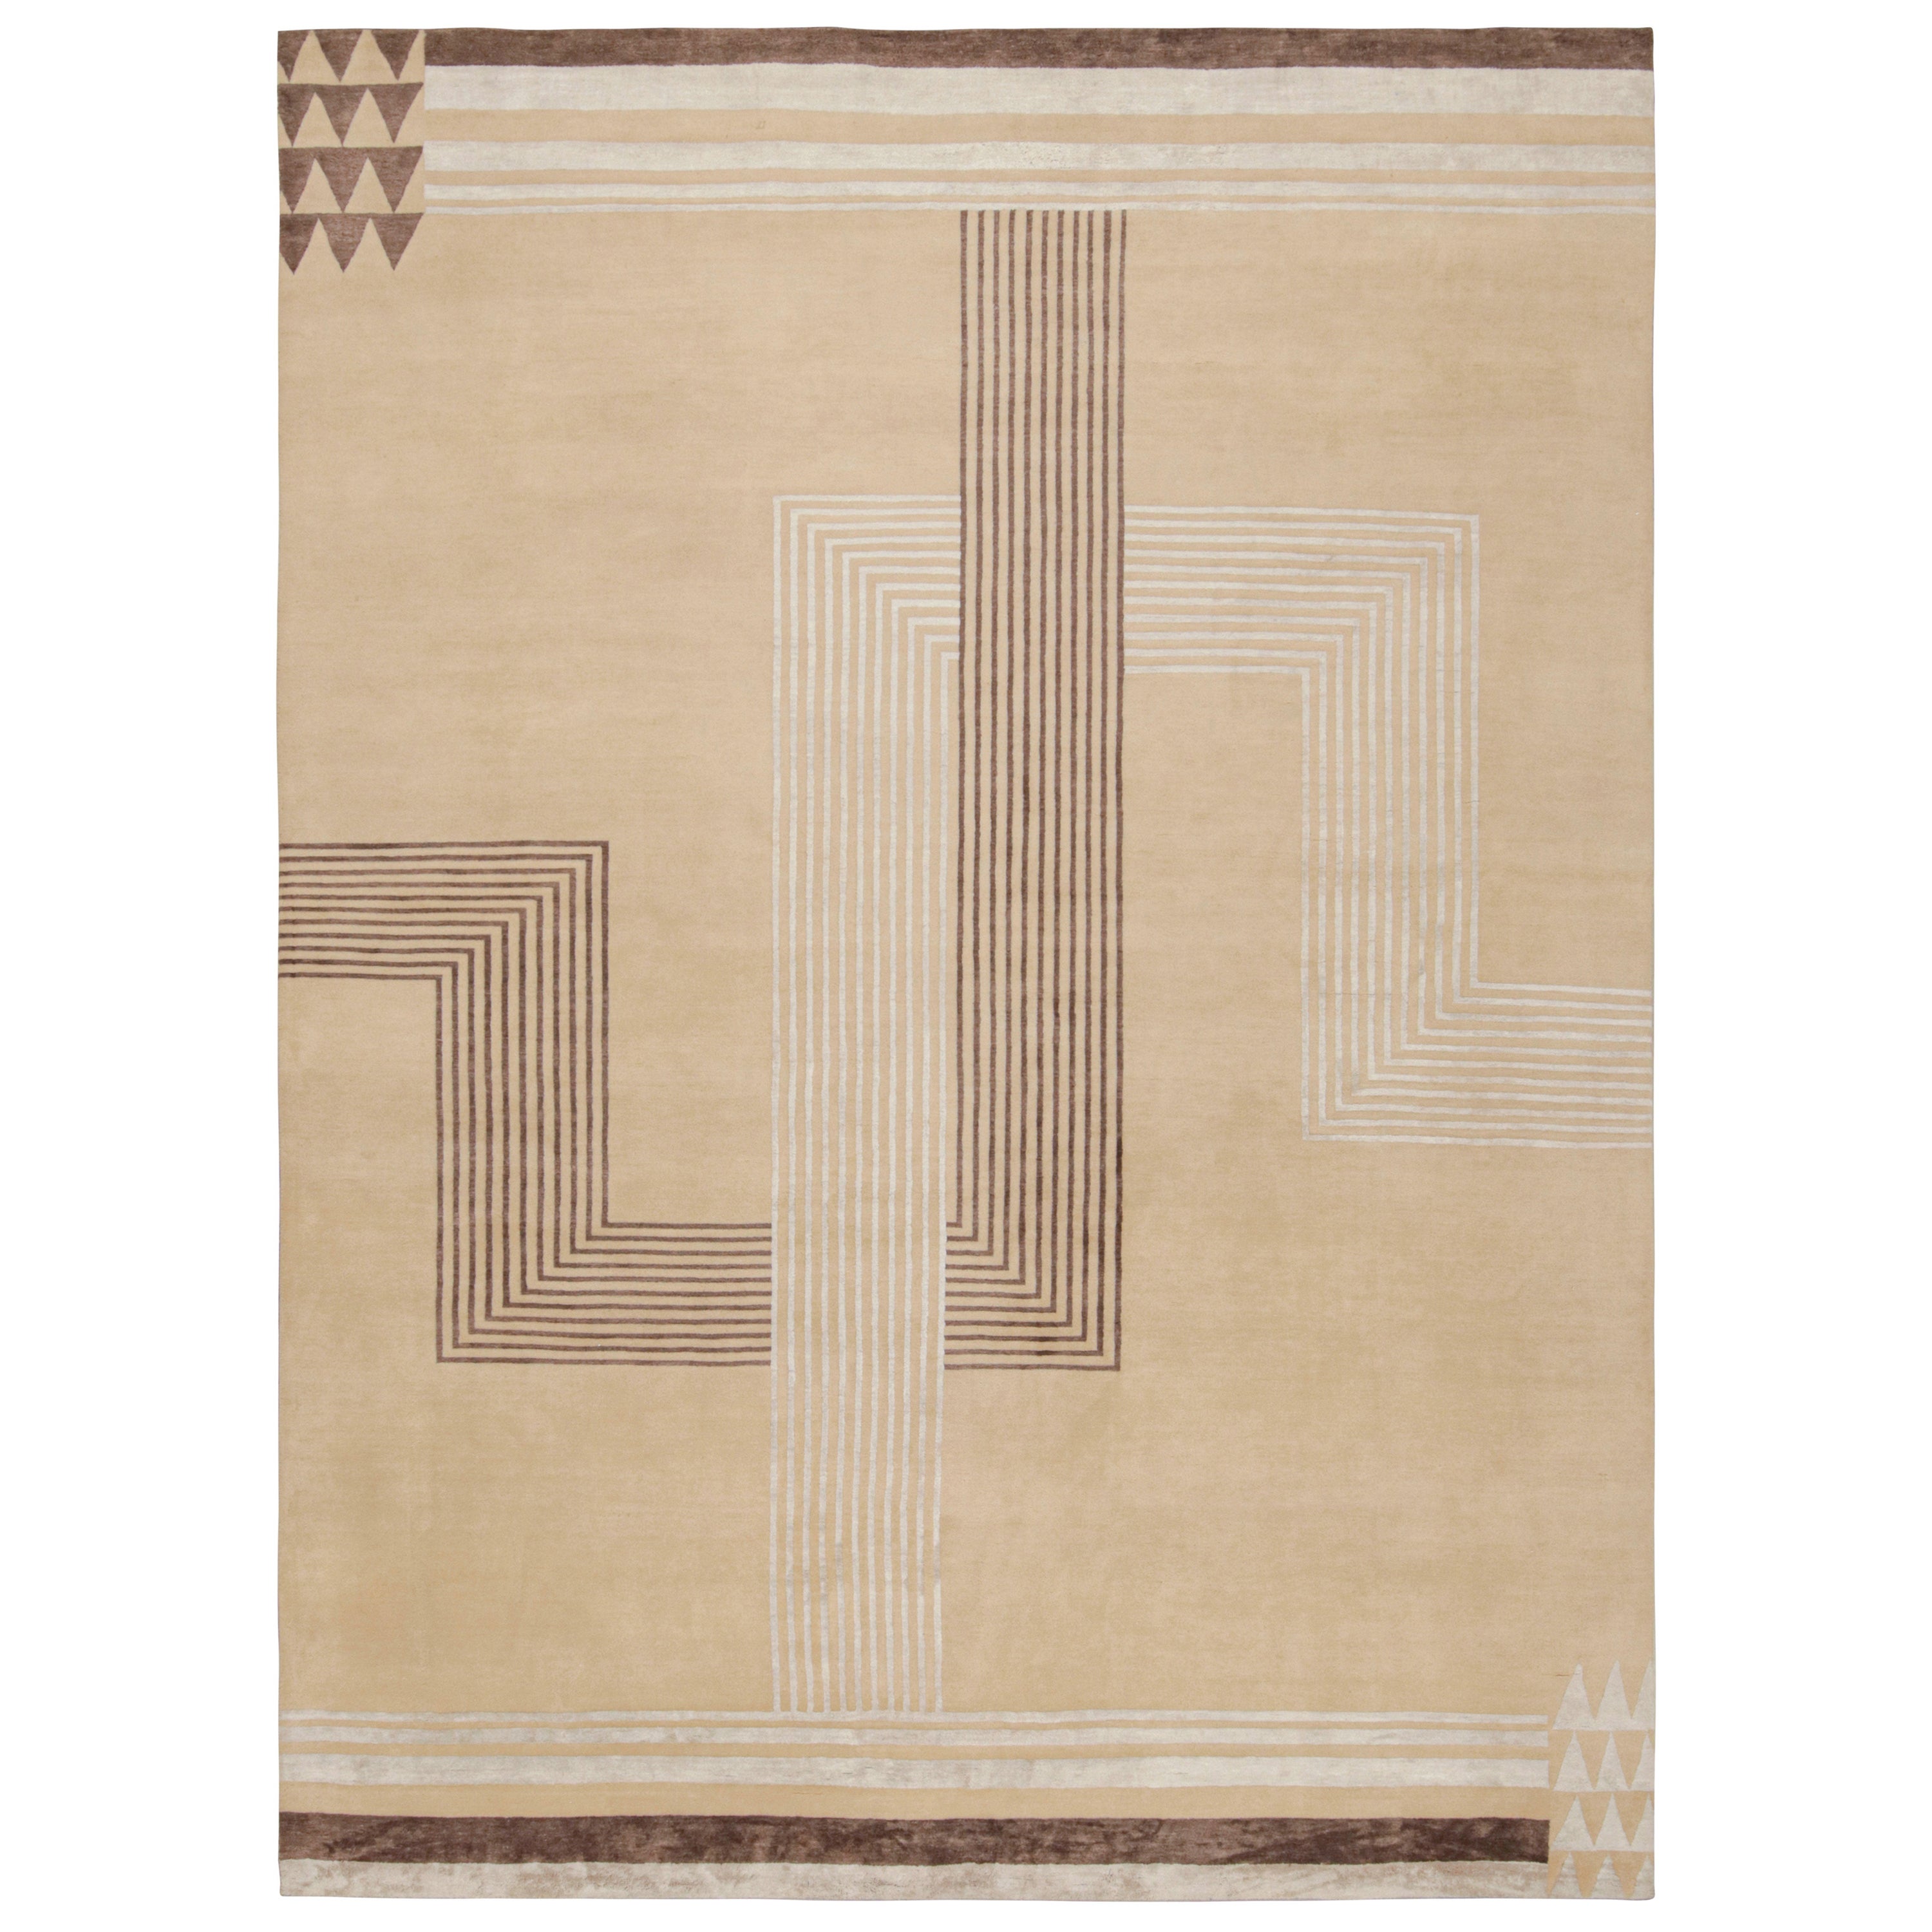 Rug & Kilim's französischer Art-Deco-Teppich mit beige-braunen Mustern